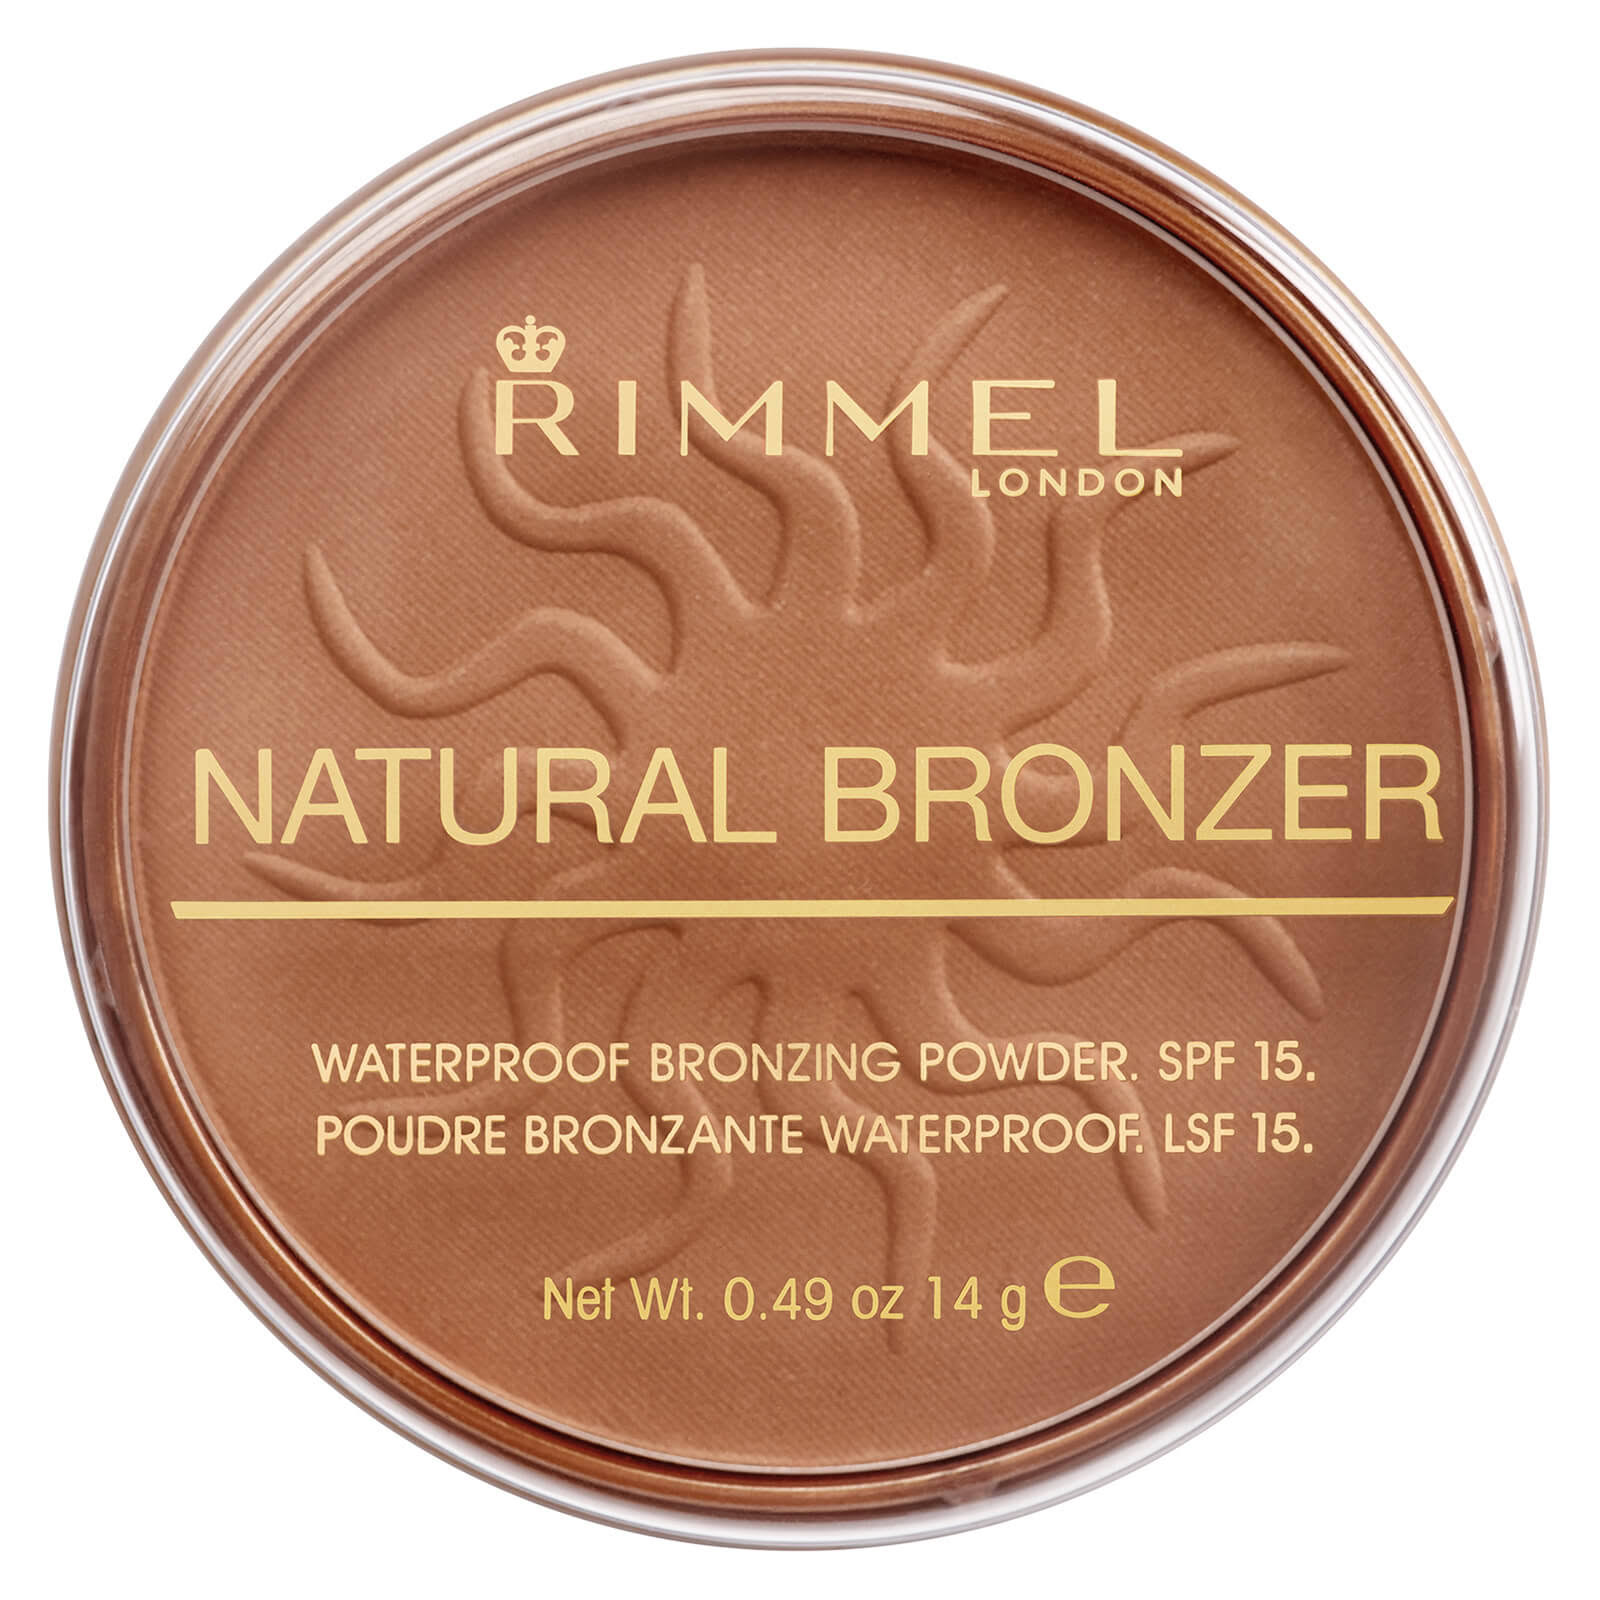 Rimmel London Natural Bronzer - 022 Sun Bronze, 14g